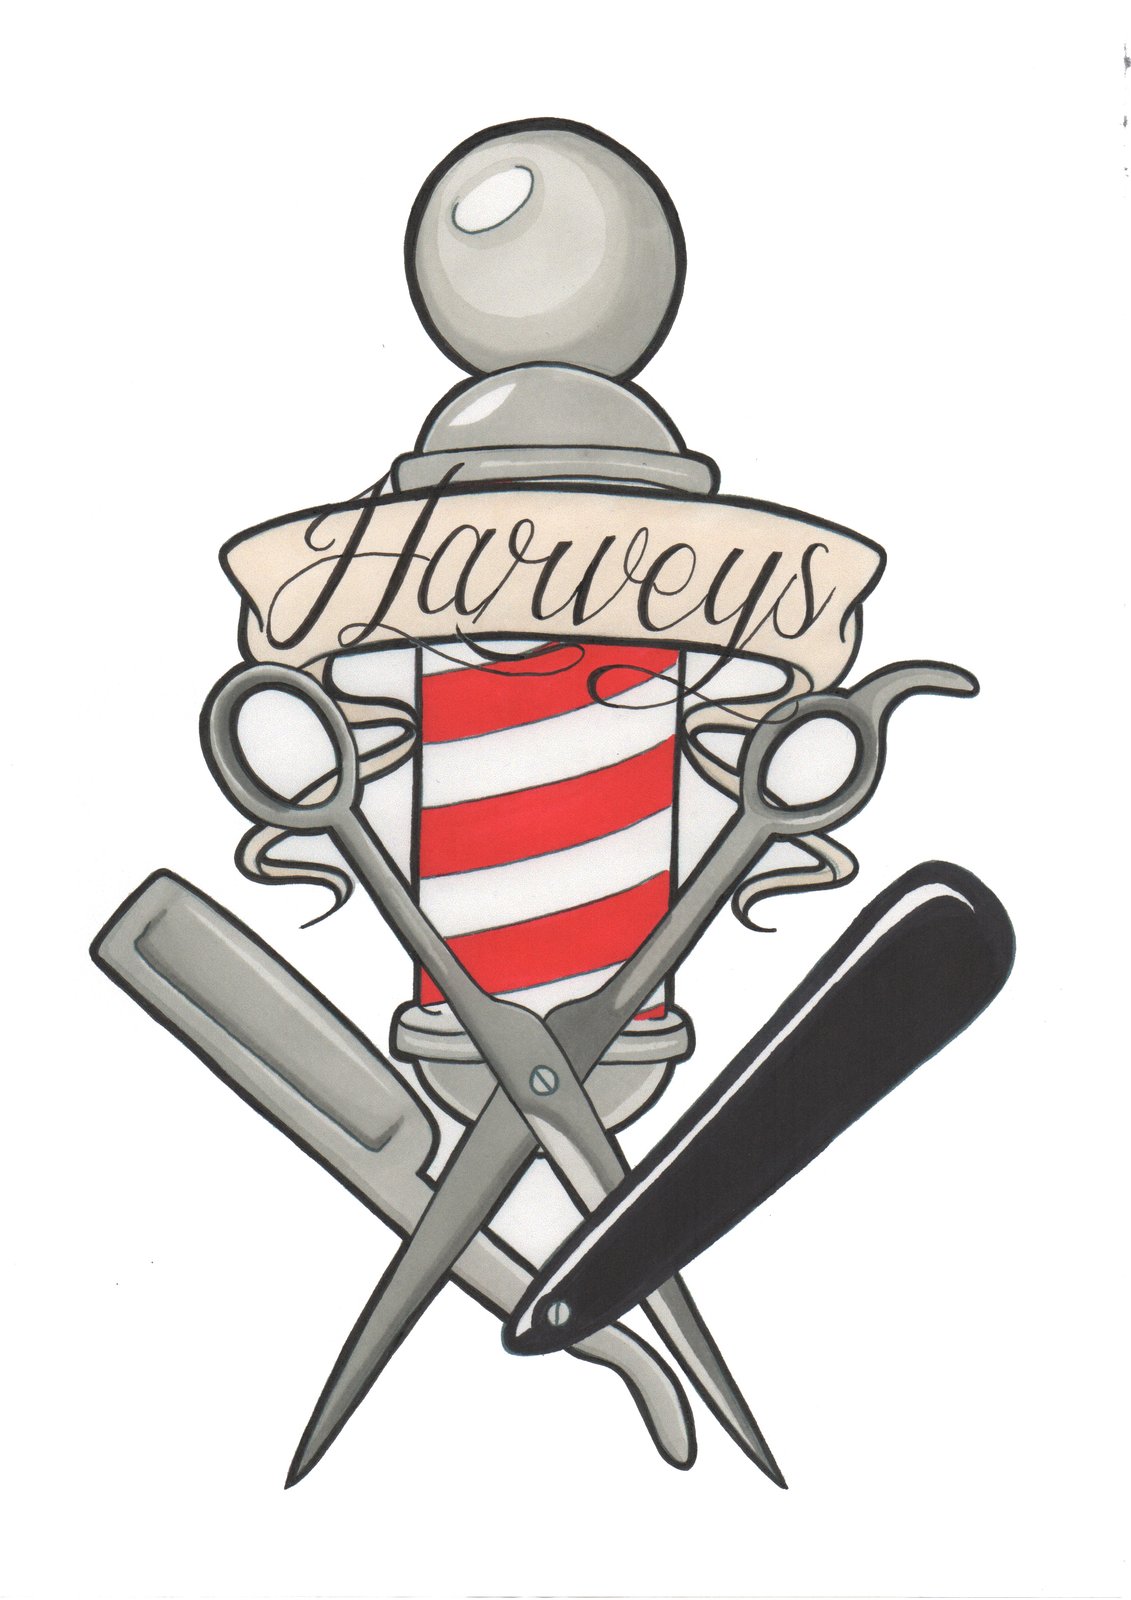 Harveys Barbers